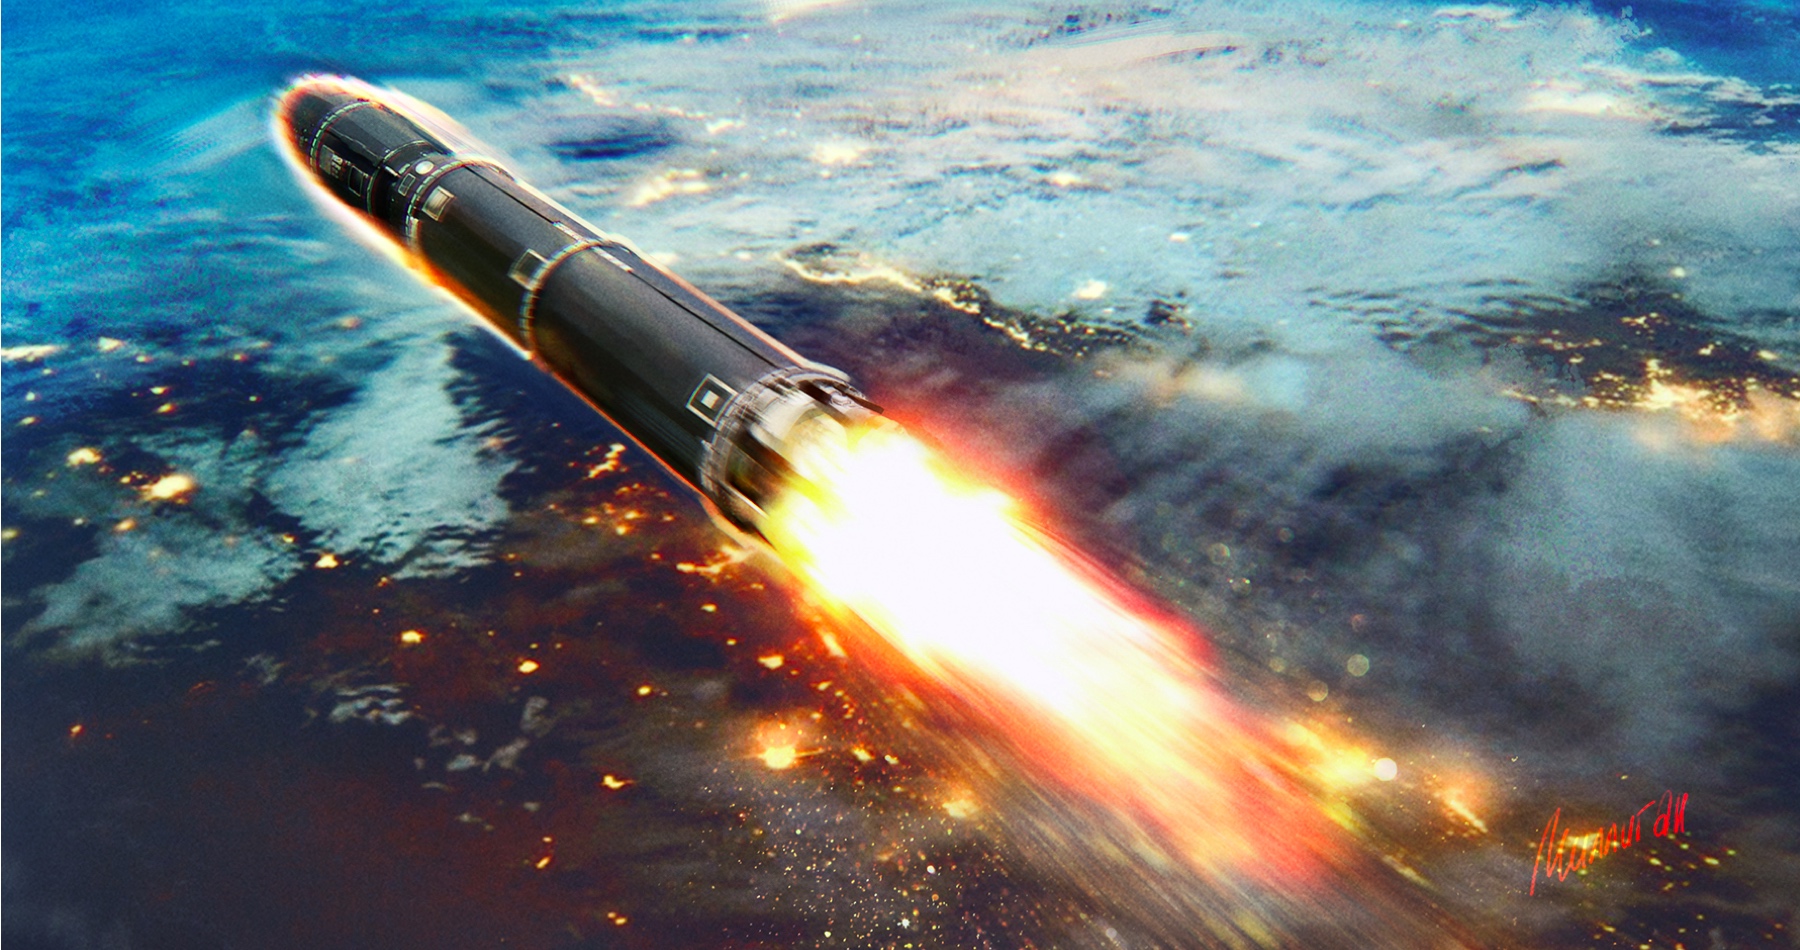 Rusko uskutočnilo na Sibíri cvičenie strategických raketových síl. V Japonskom mori pred tým úspešne otestovalo supersonické protilodné strely Moskit